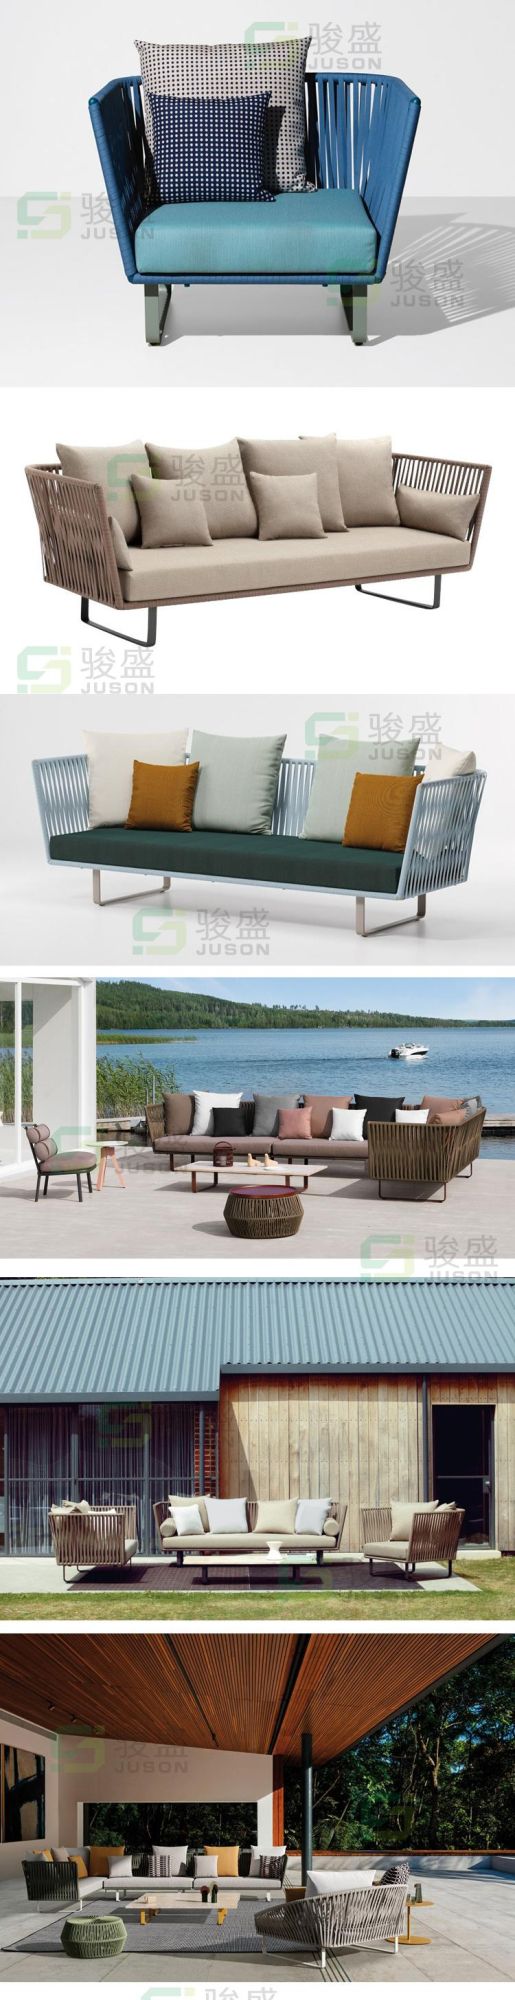 Hot Sale European Style Outdoor Furniture Garden Sofa Set Modern Patio Sofa Furniture